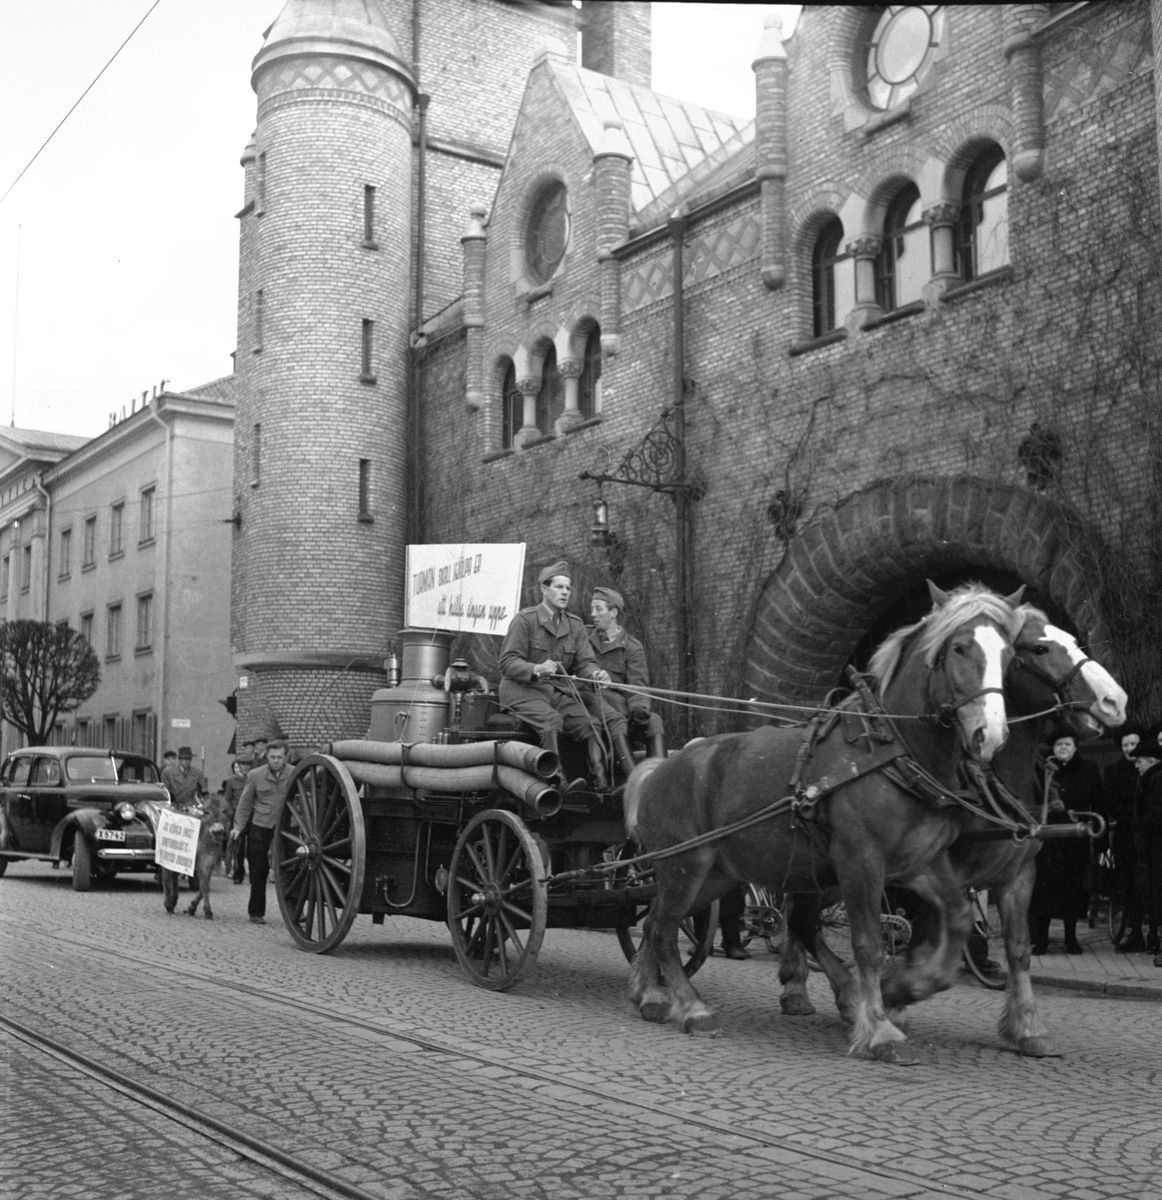 "Turman" Journalisternas rundtur genom staden den 13 april 1950, samt i Furuvik 11 juni 1950. "Rundturen" kallades ett arrangemang som vartannat år med start i början av 1950-talet marknadsfördes av föreningen Gävleborgsjournalisterna. Jippot ordnades runt om i länet och i centrum stod en figur som kallades "Turman" oftast spelad av Macce Kjellin